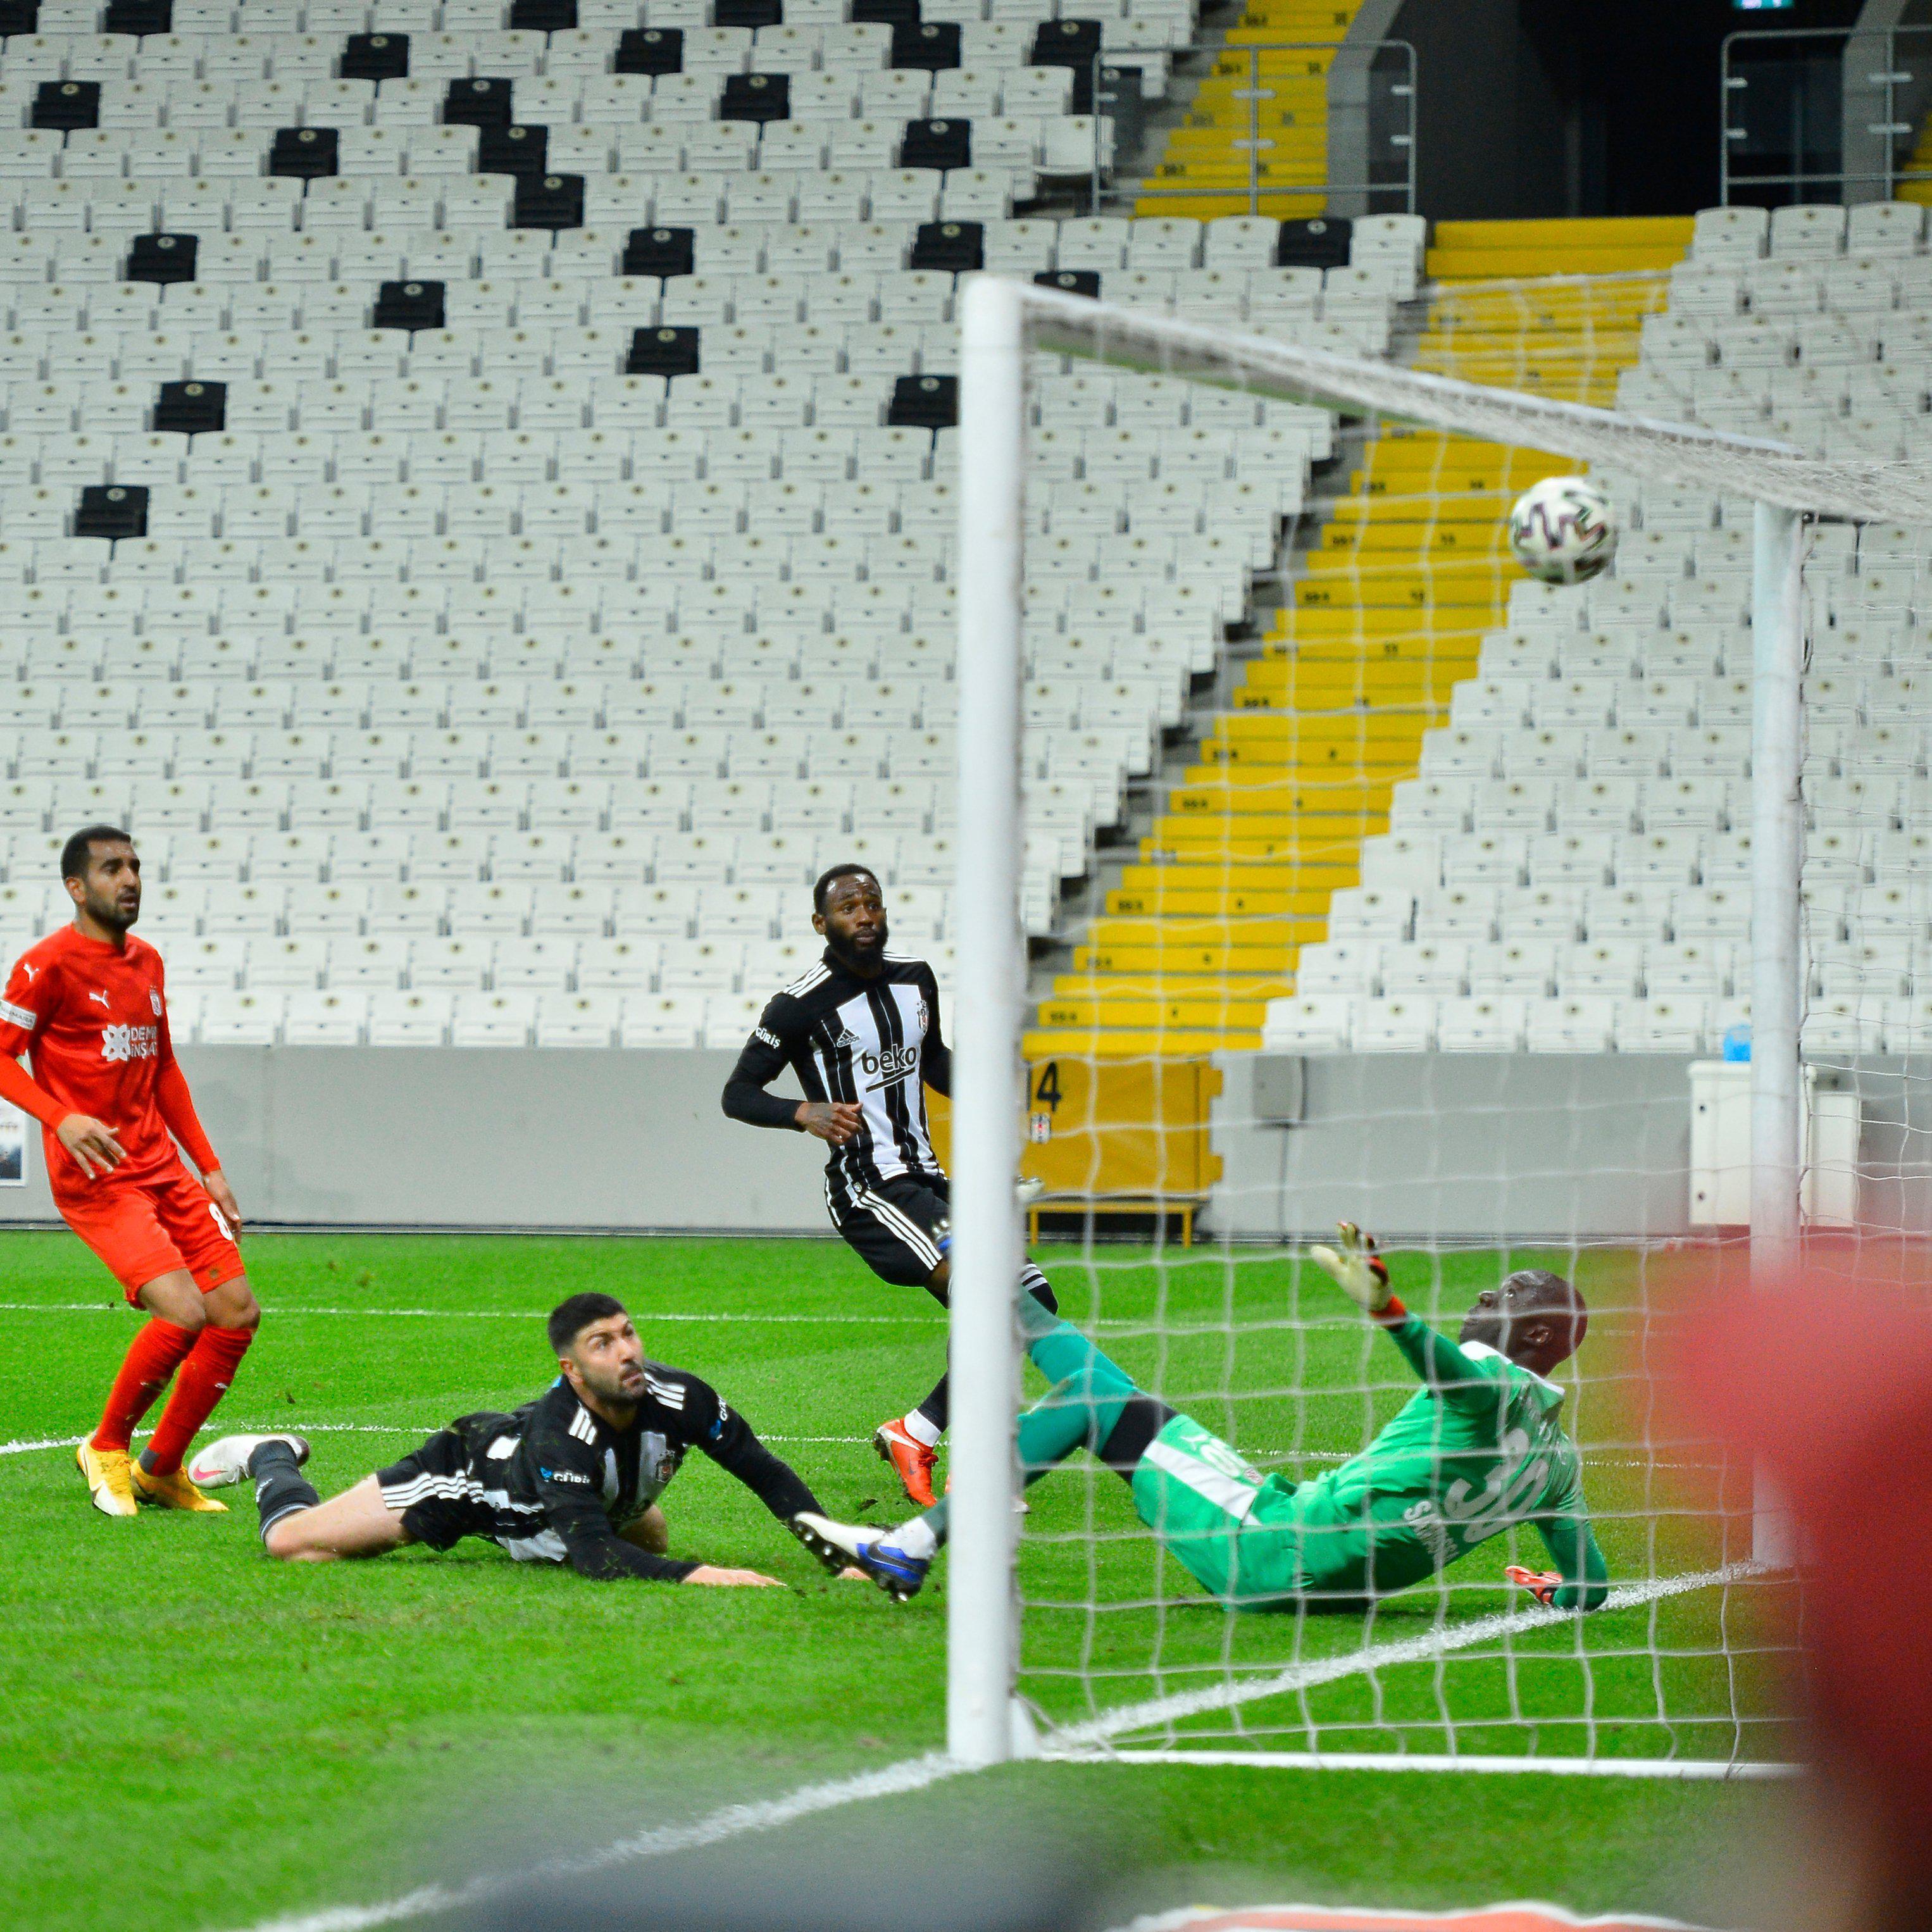 (ÖZET) Beşiktaş - Sivasspor maç sonucu 3-0 (BJK - Sivas)